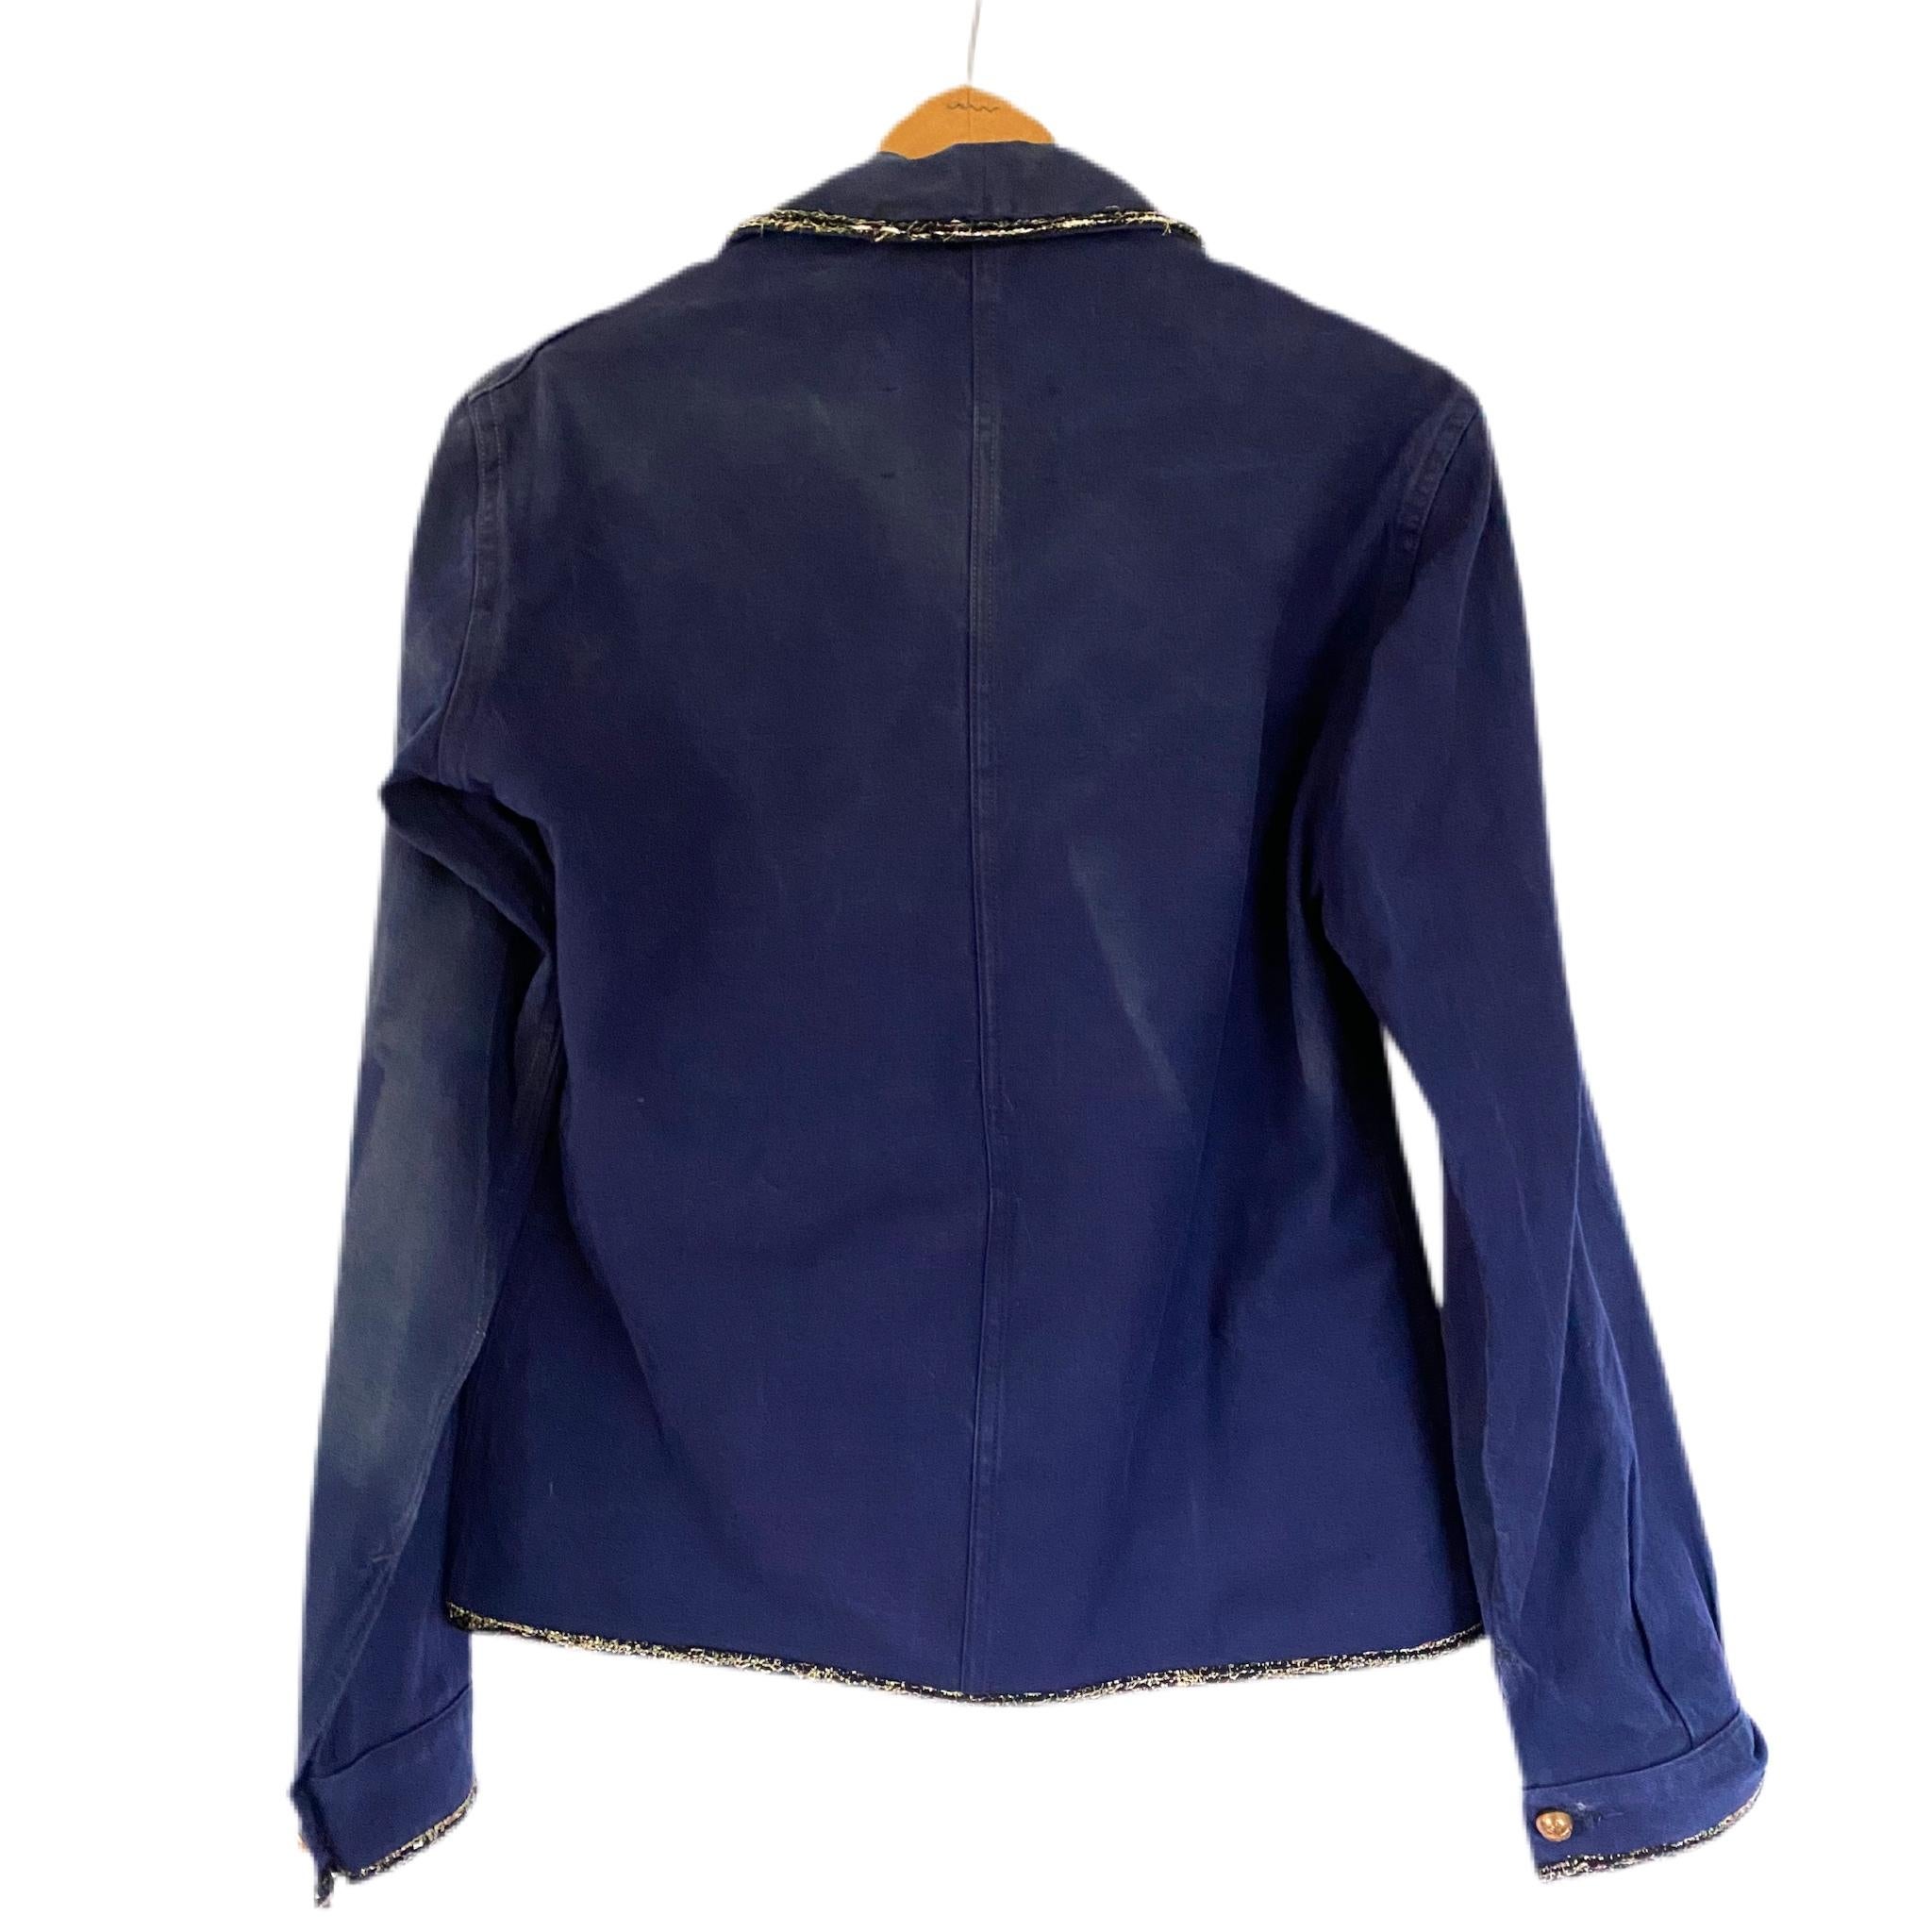 Vintage Jacket Blue French Workwear Black Gold Lurex Embellished J Dauphin 1